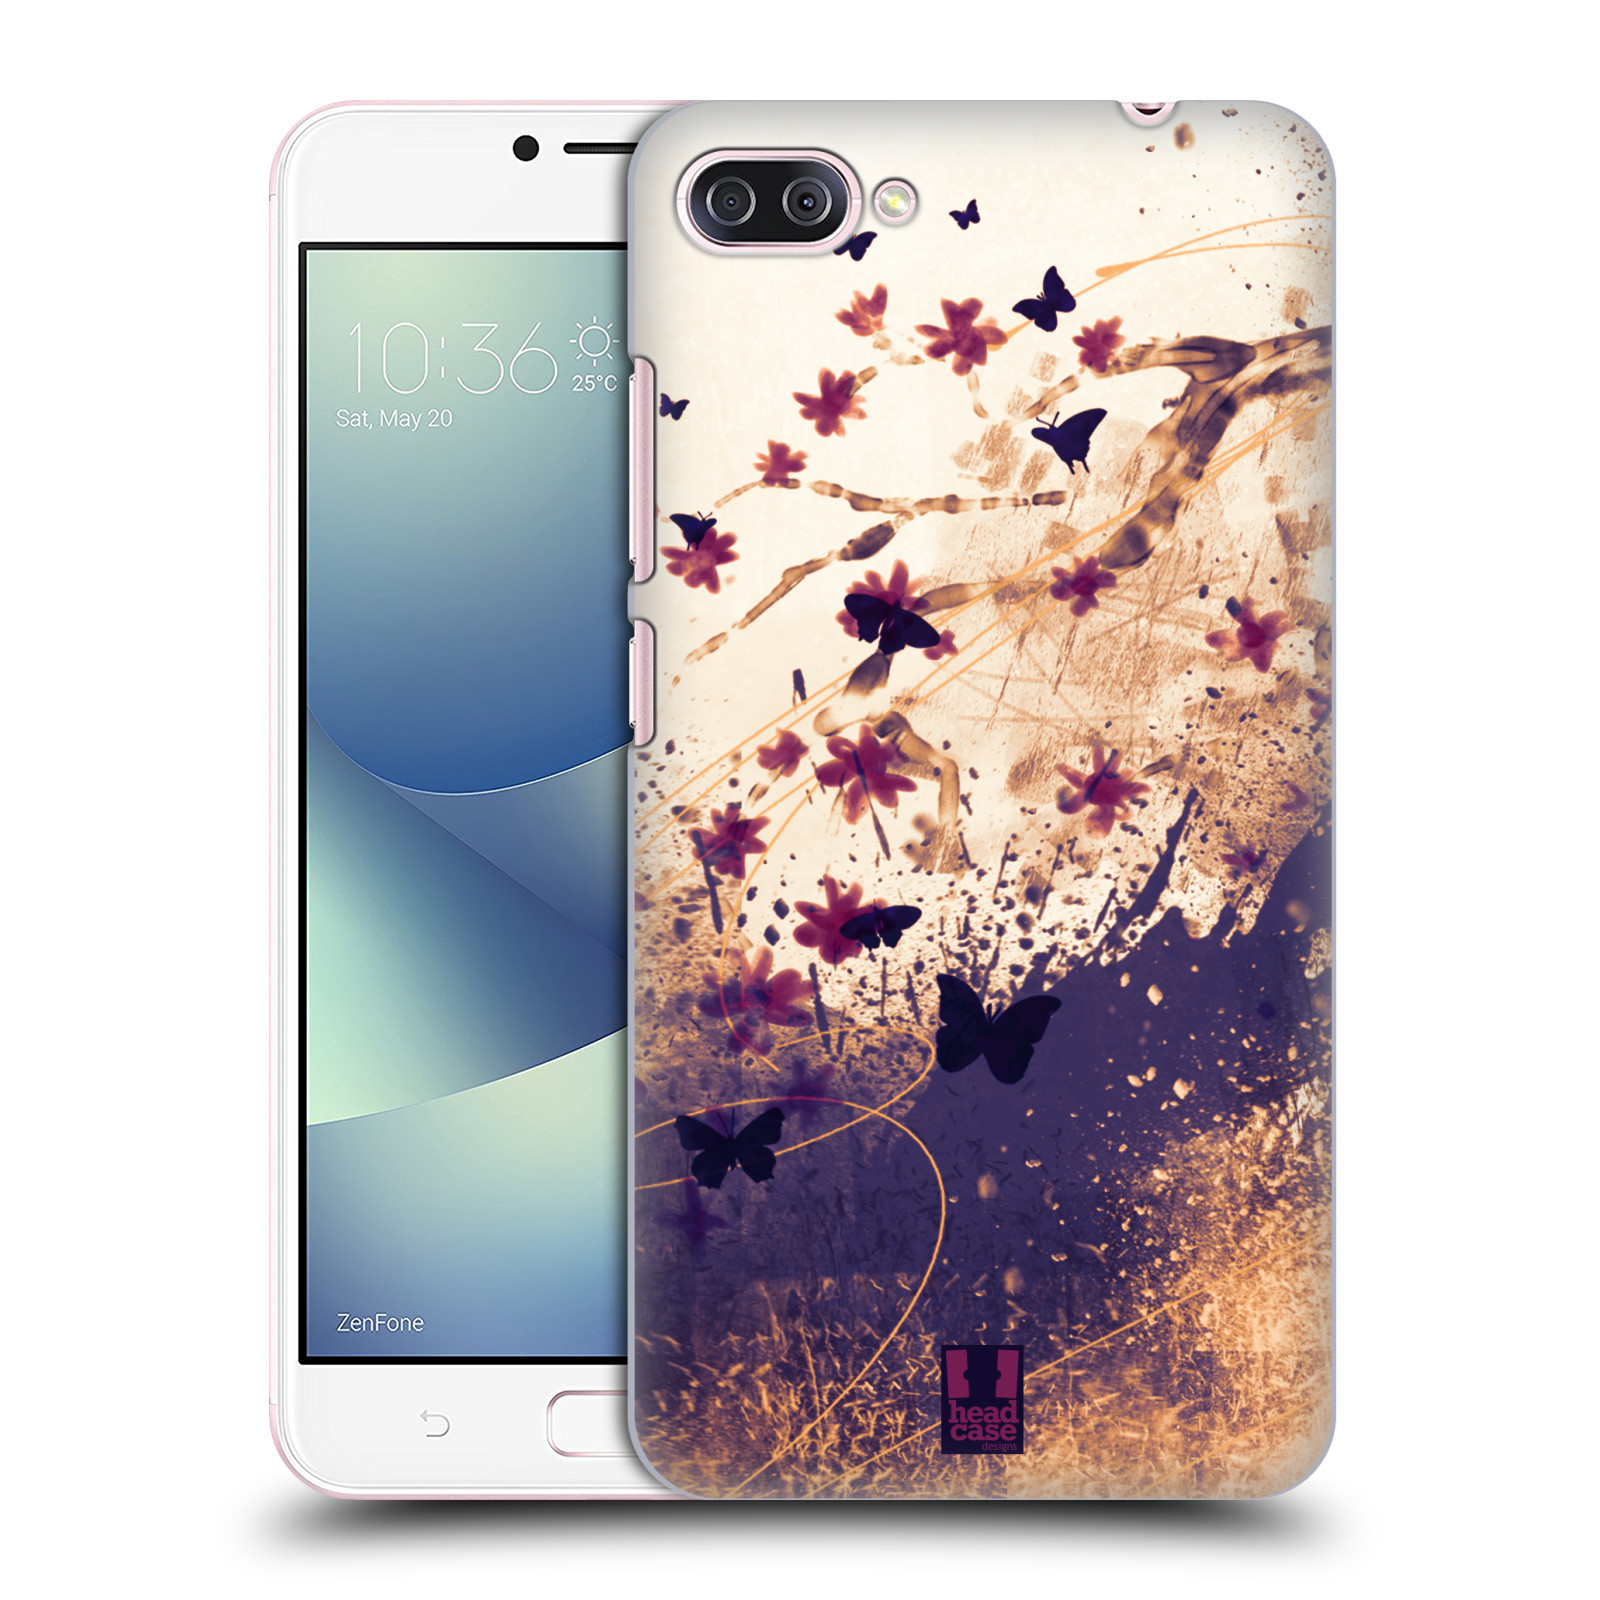 Zadní obal pro mobil Asus Zenfone 4 MAX / 4 MAX PRO (ZC554KL) - HEAD CASE - Barevné květy a motýlci